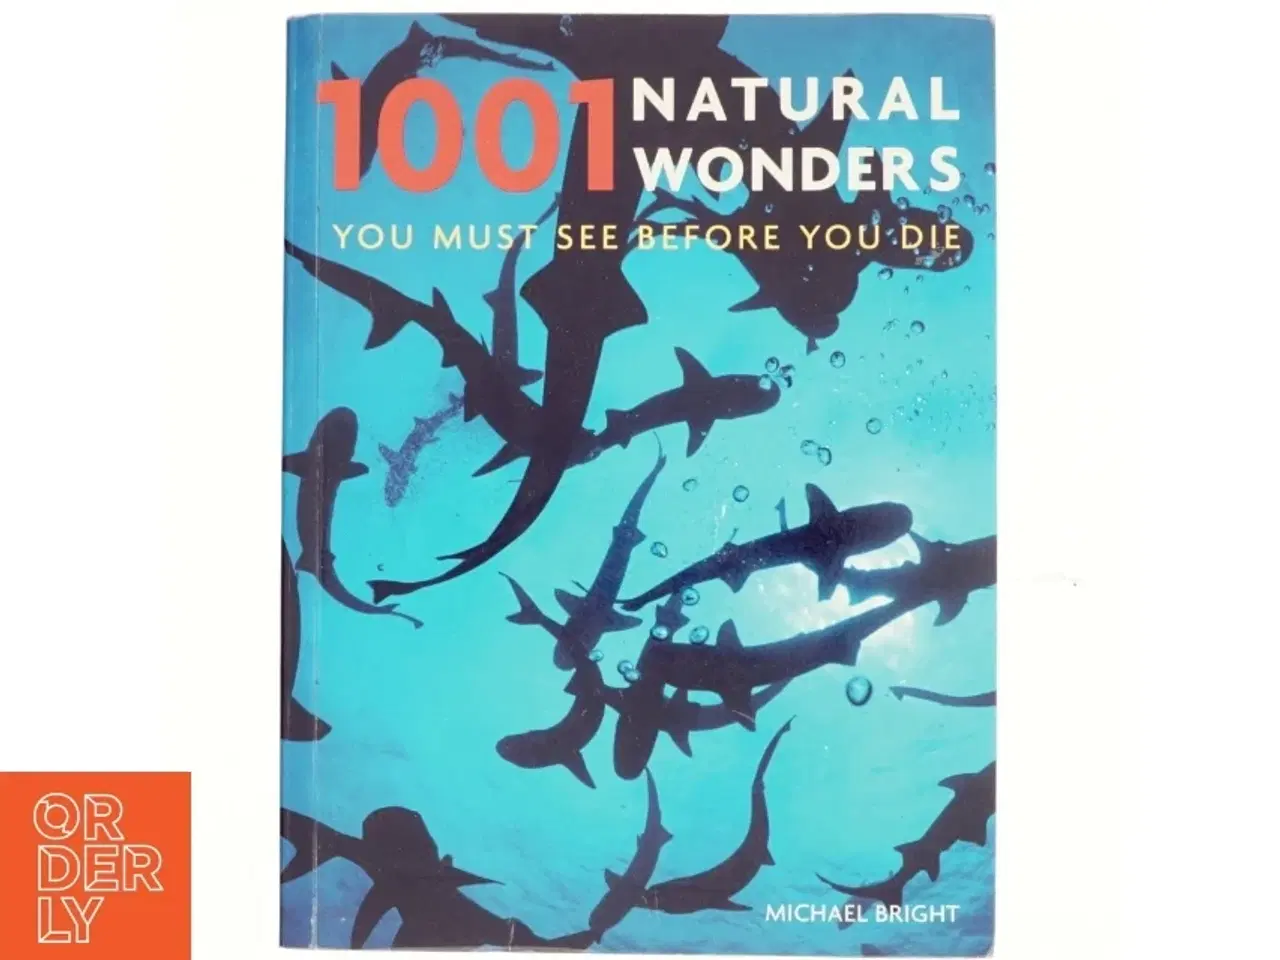 Billede 1 - 1001 natural wonders af Michael Bright (Bog)